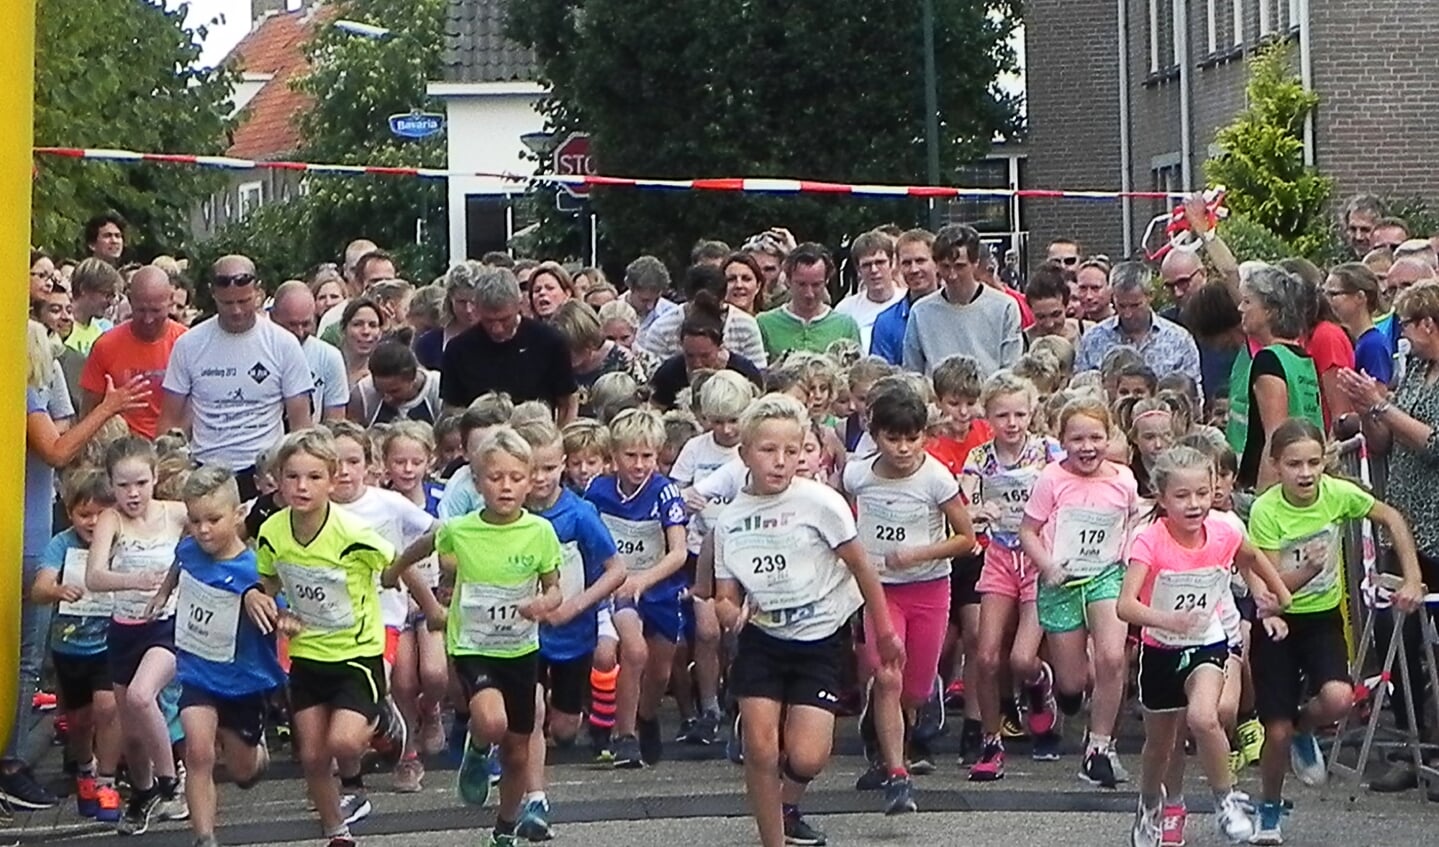 Direct na de start van de 1 kilometer kinderloop ging het al erg hard. Links met nummer 117 loopt de uiteindelijke winnaar Yze Wijnalda uit Bunnik.